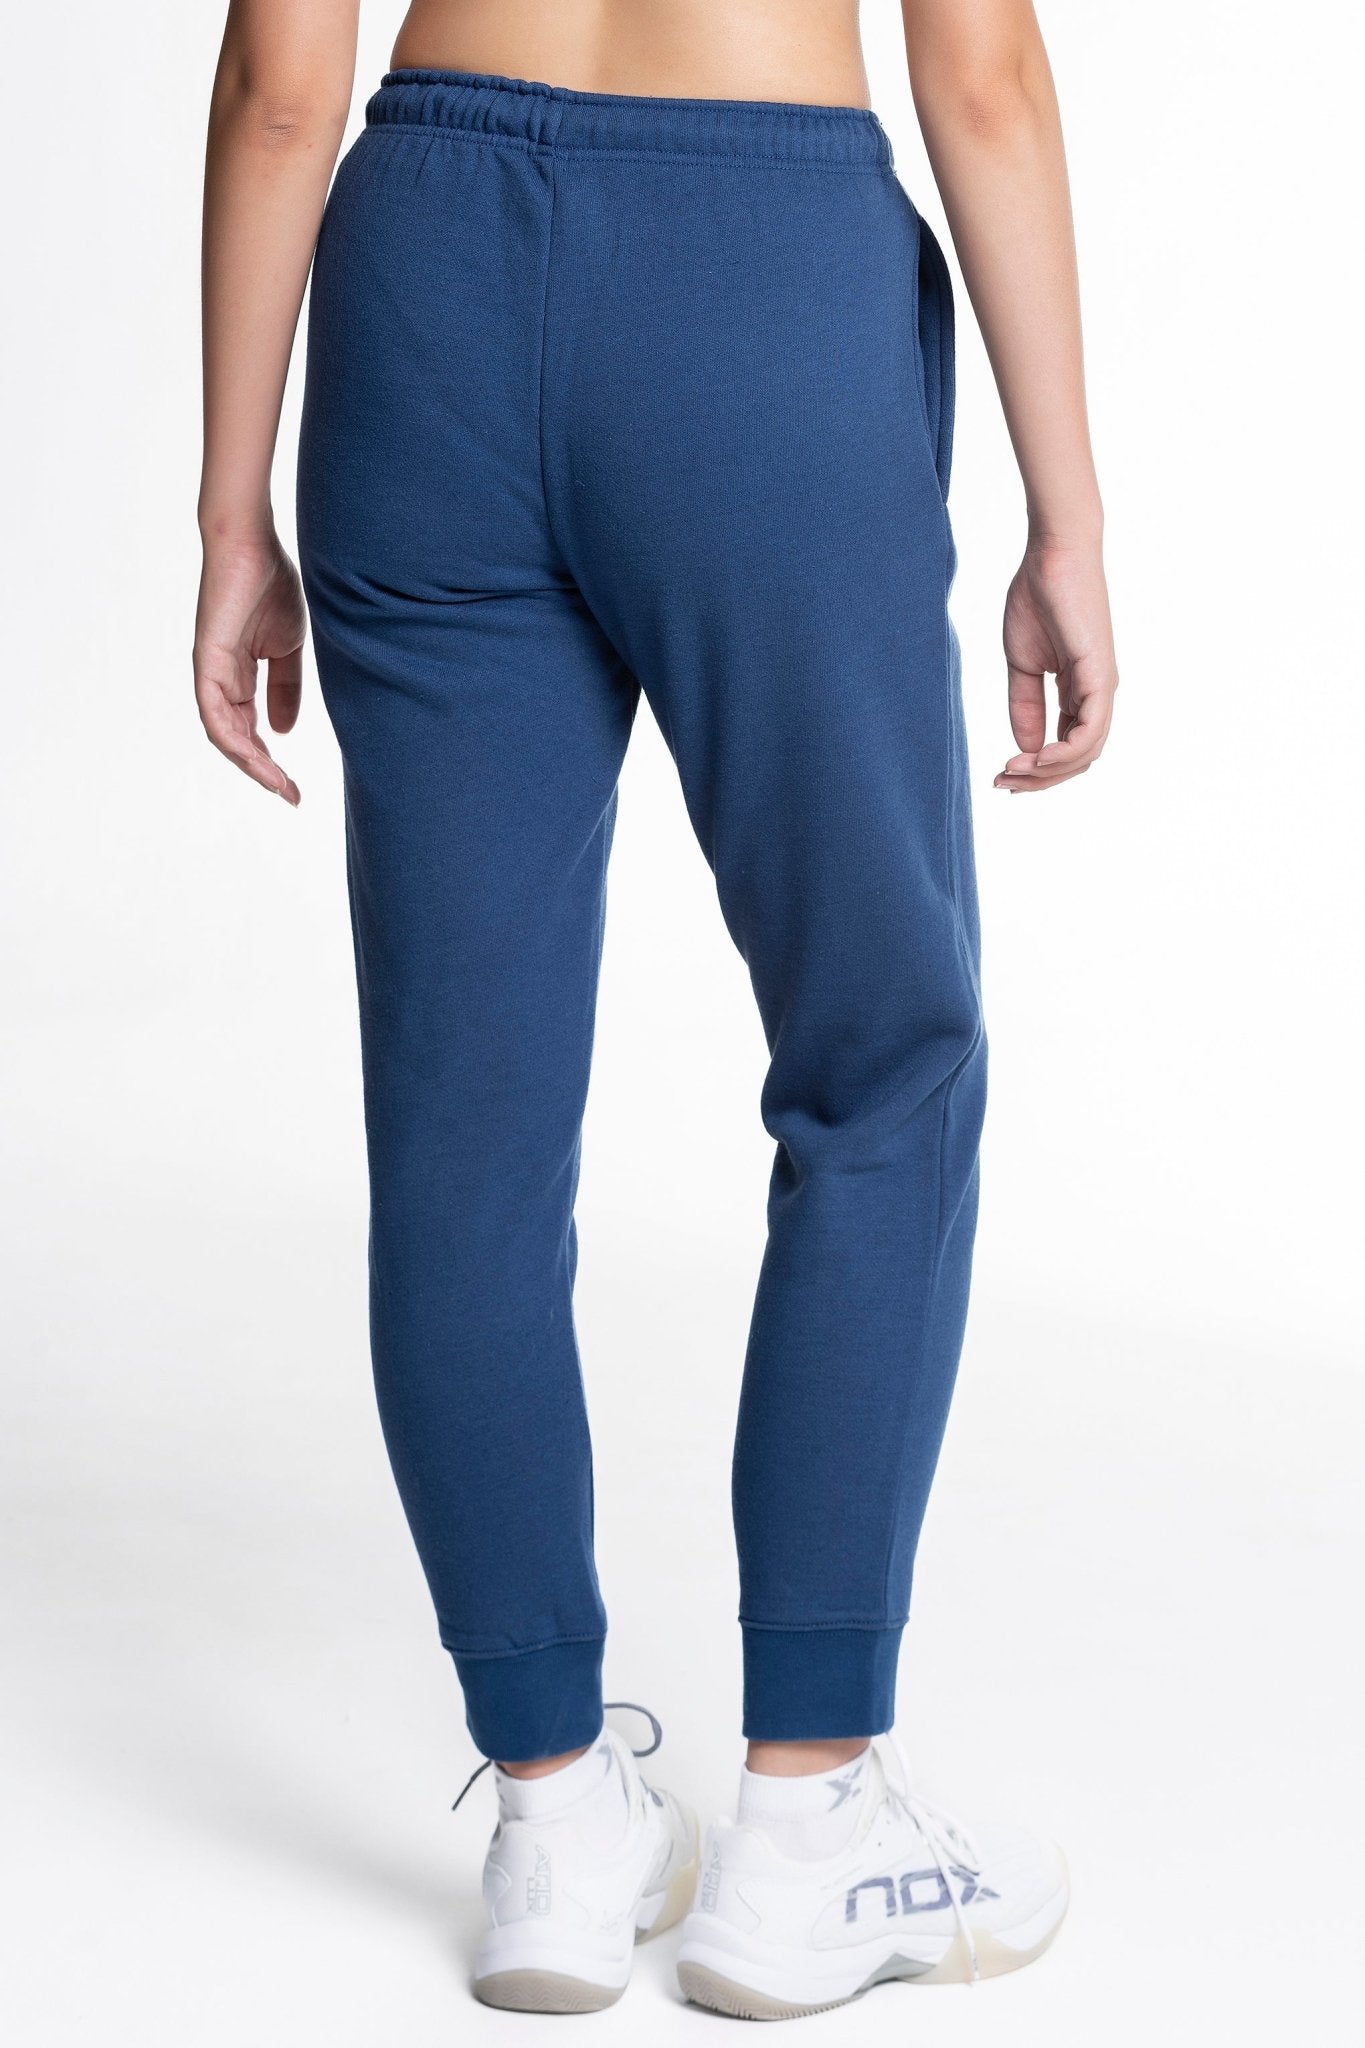 Pantalón chandal mujer BASIC - CASUAL azul marino – NOX